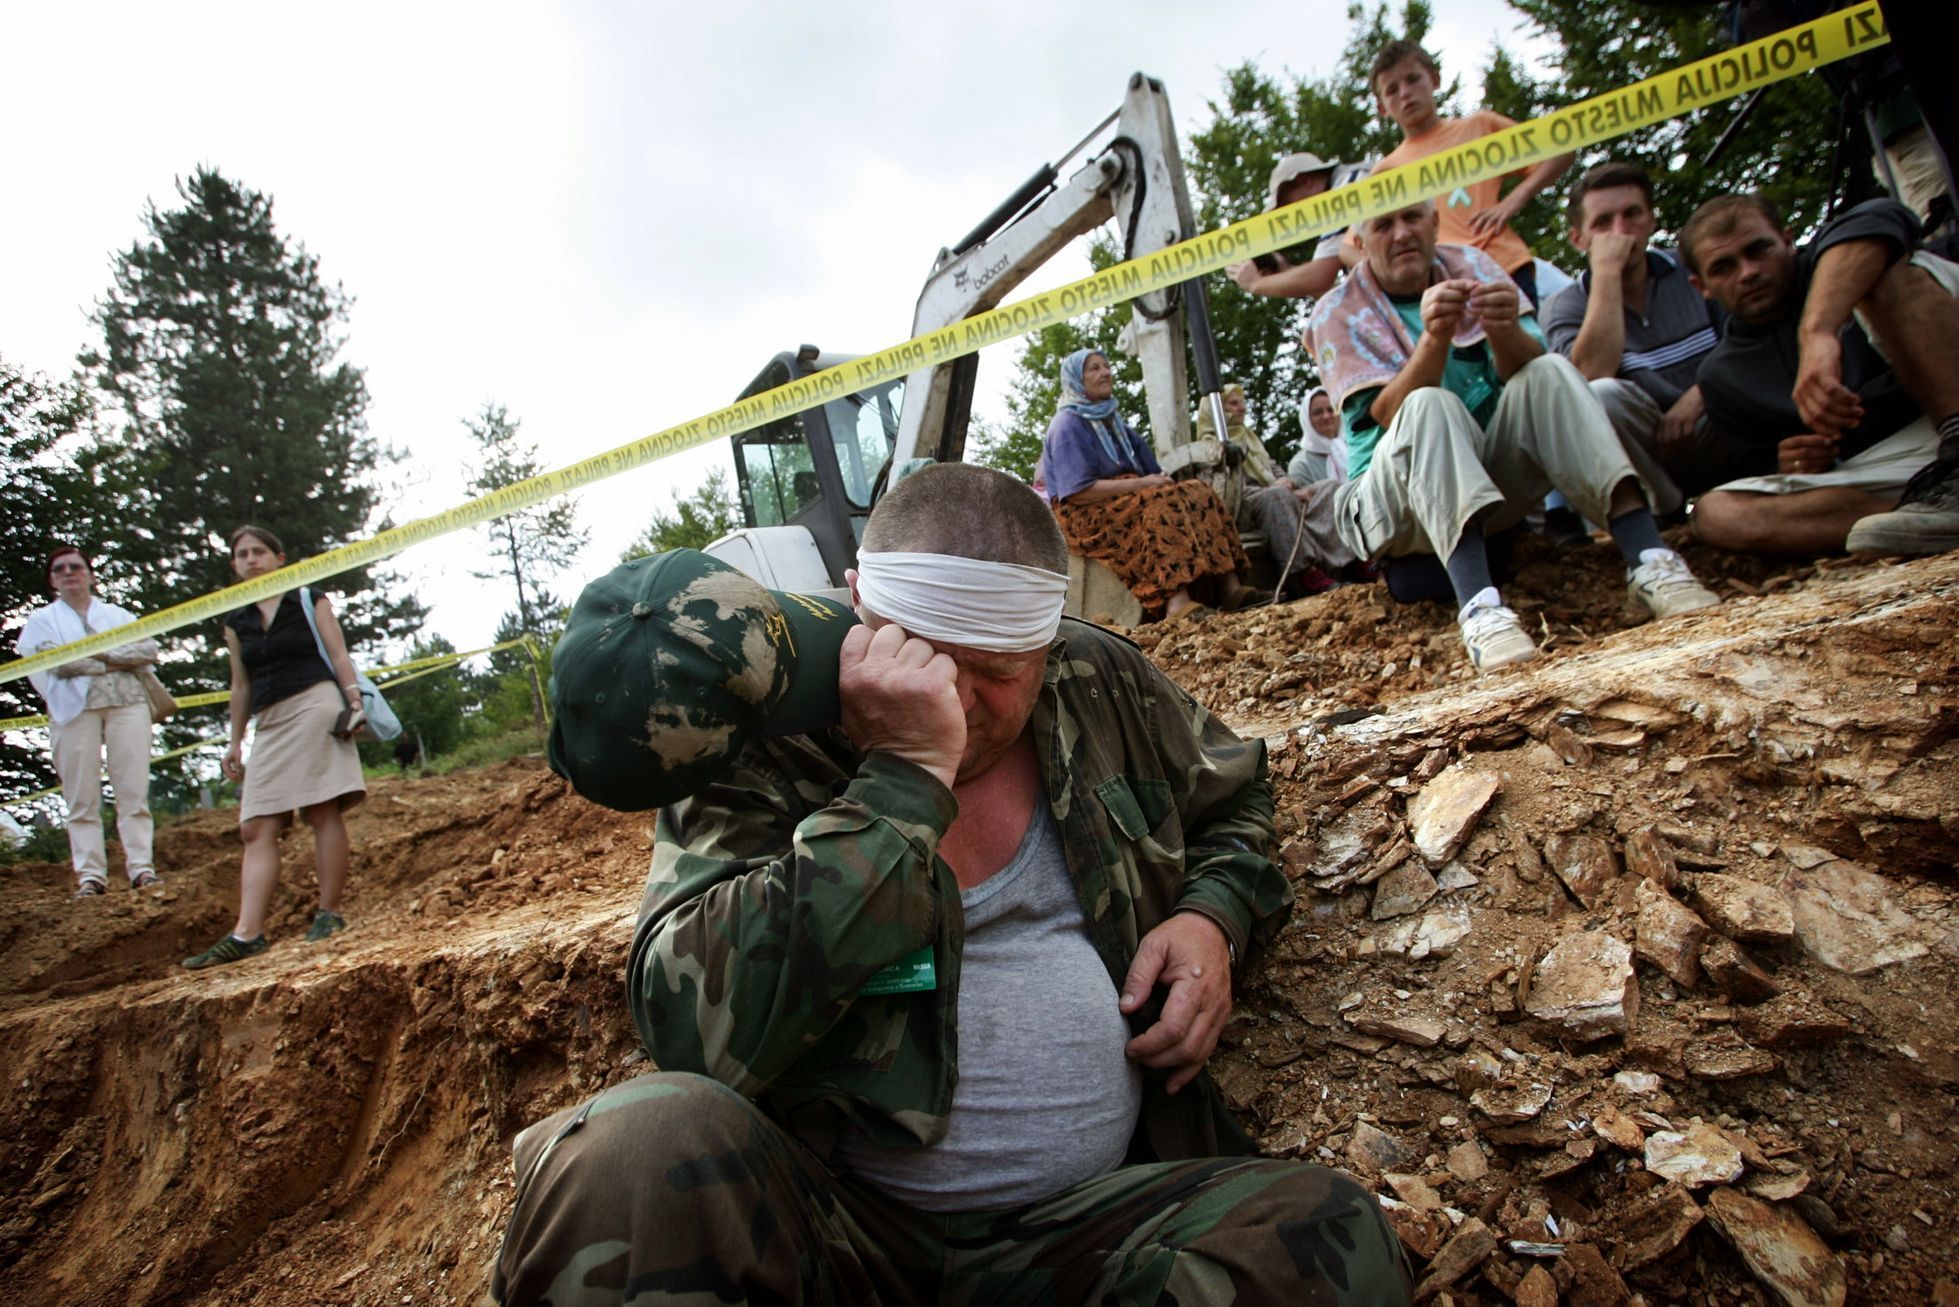 Fotogalerie / Výročí masakru / Srebrenica/ Reuters / 11